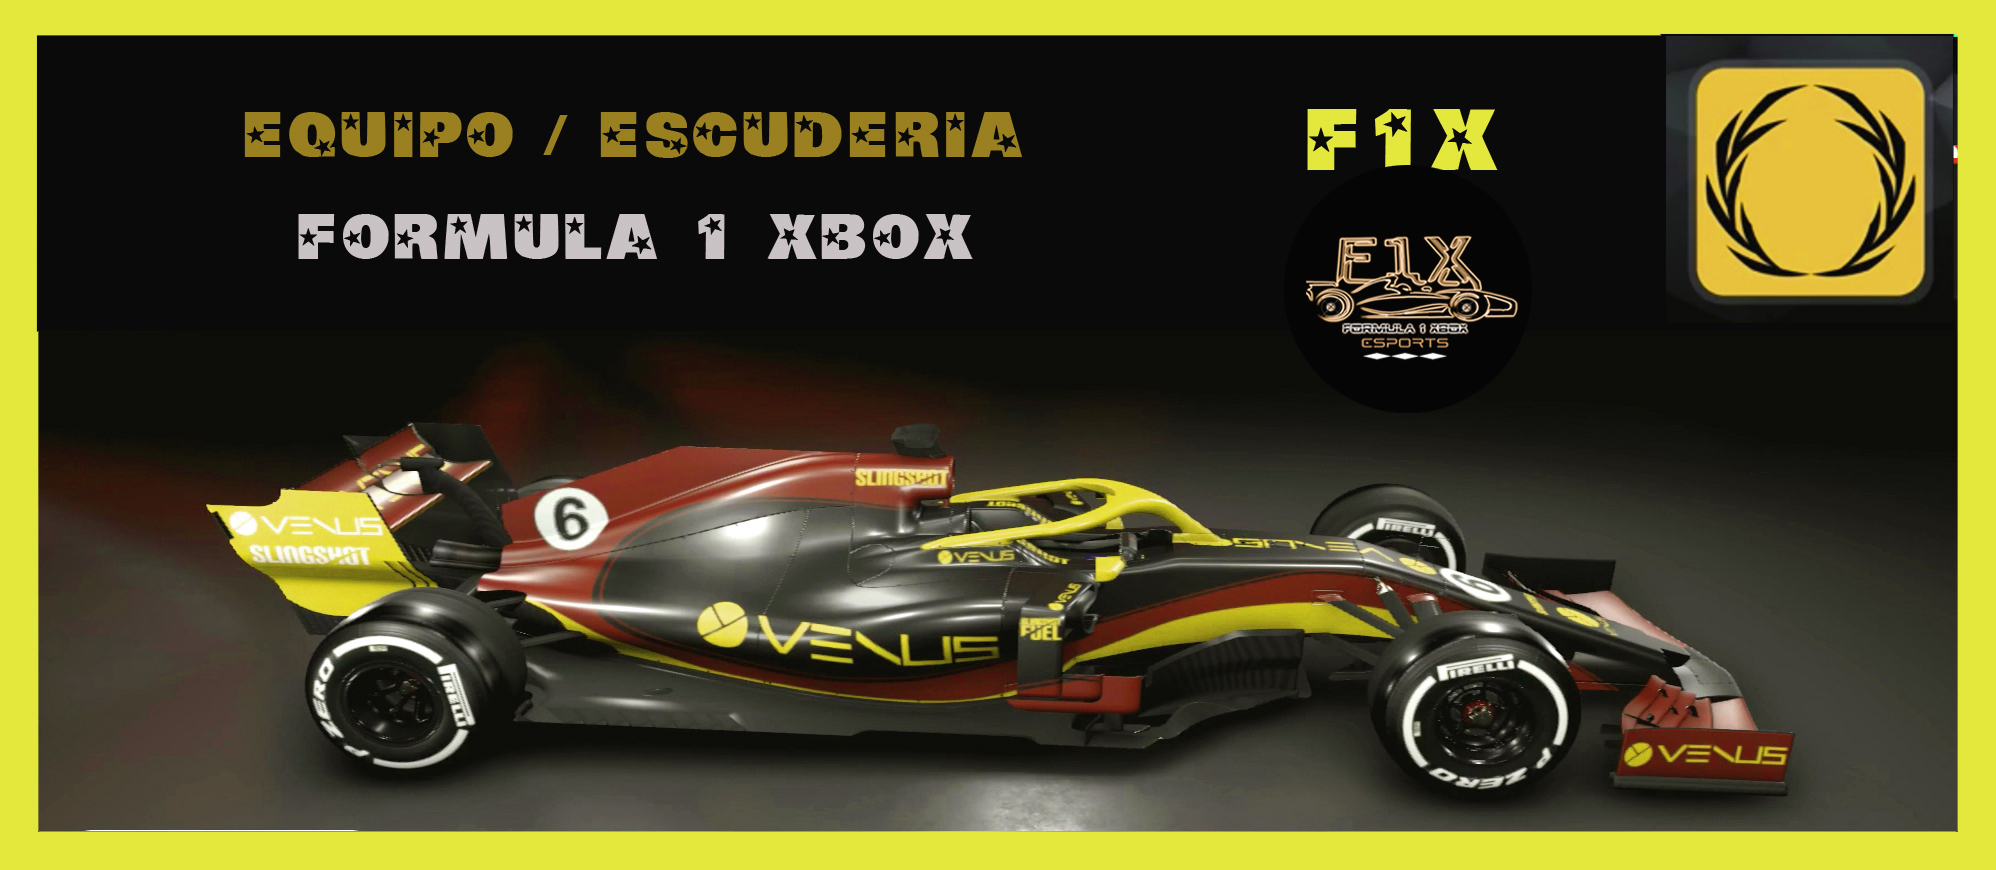 F1 2019 - PERSONALIZADOS / LIGA STAR TEAM / PRESENTACIÓN DEL EQUIPO FORMULA 1 XBOX / F1X. Escude38